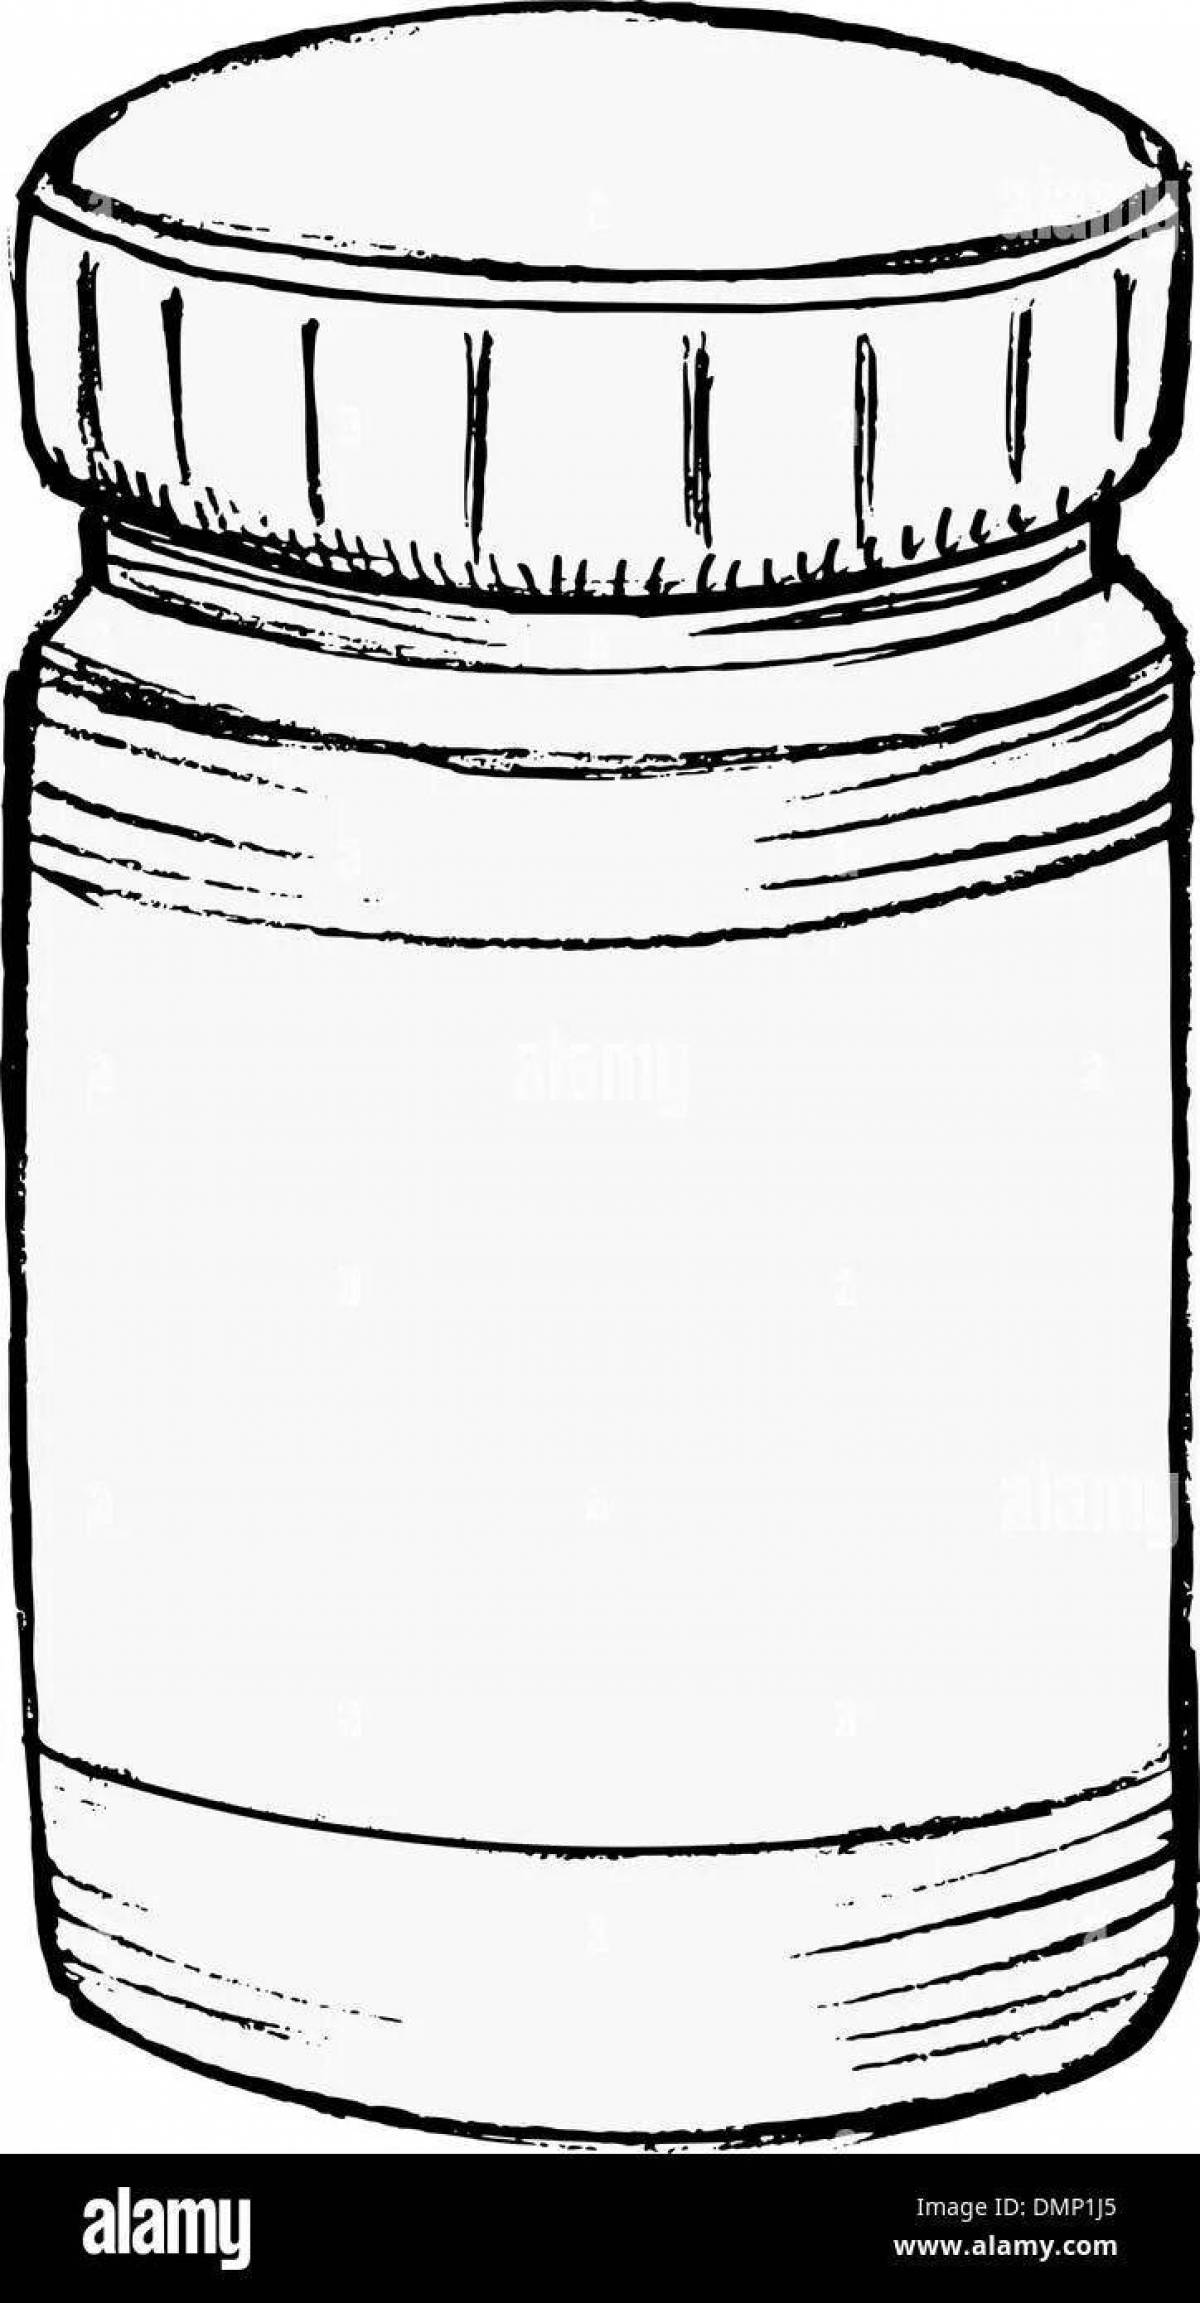 Coloring book shiny jar of vitamins